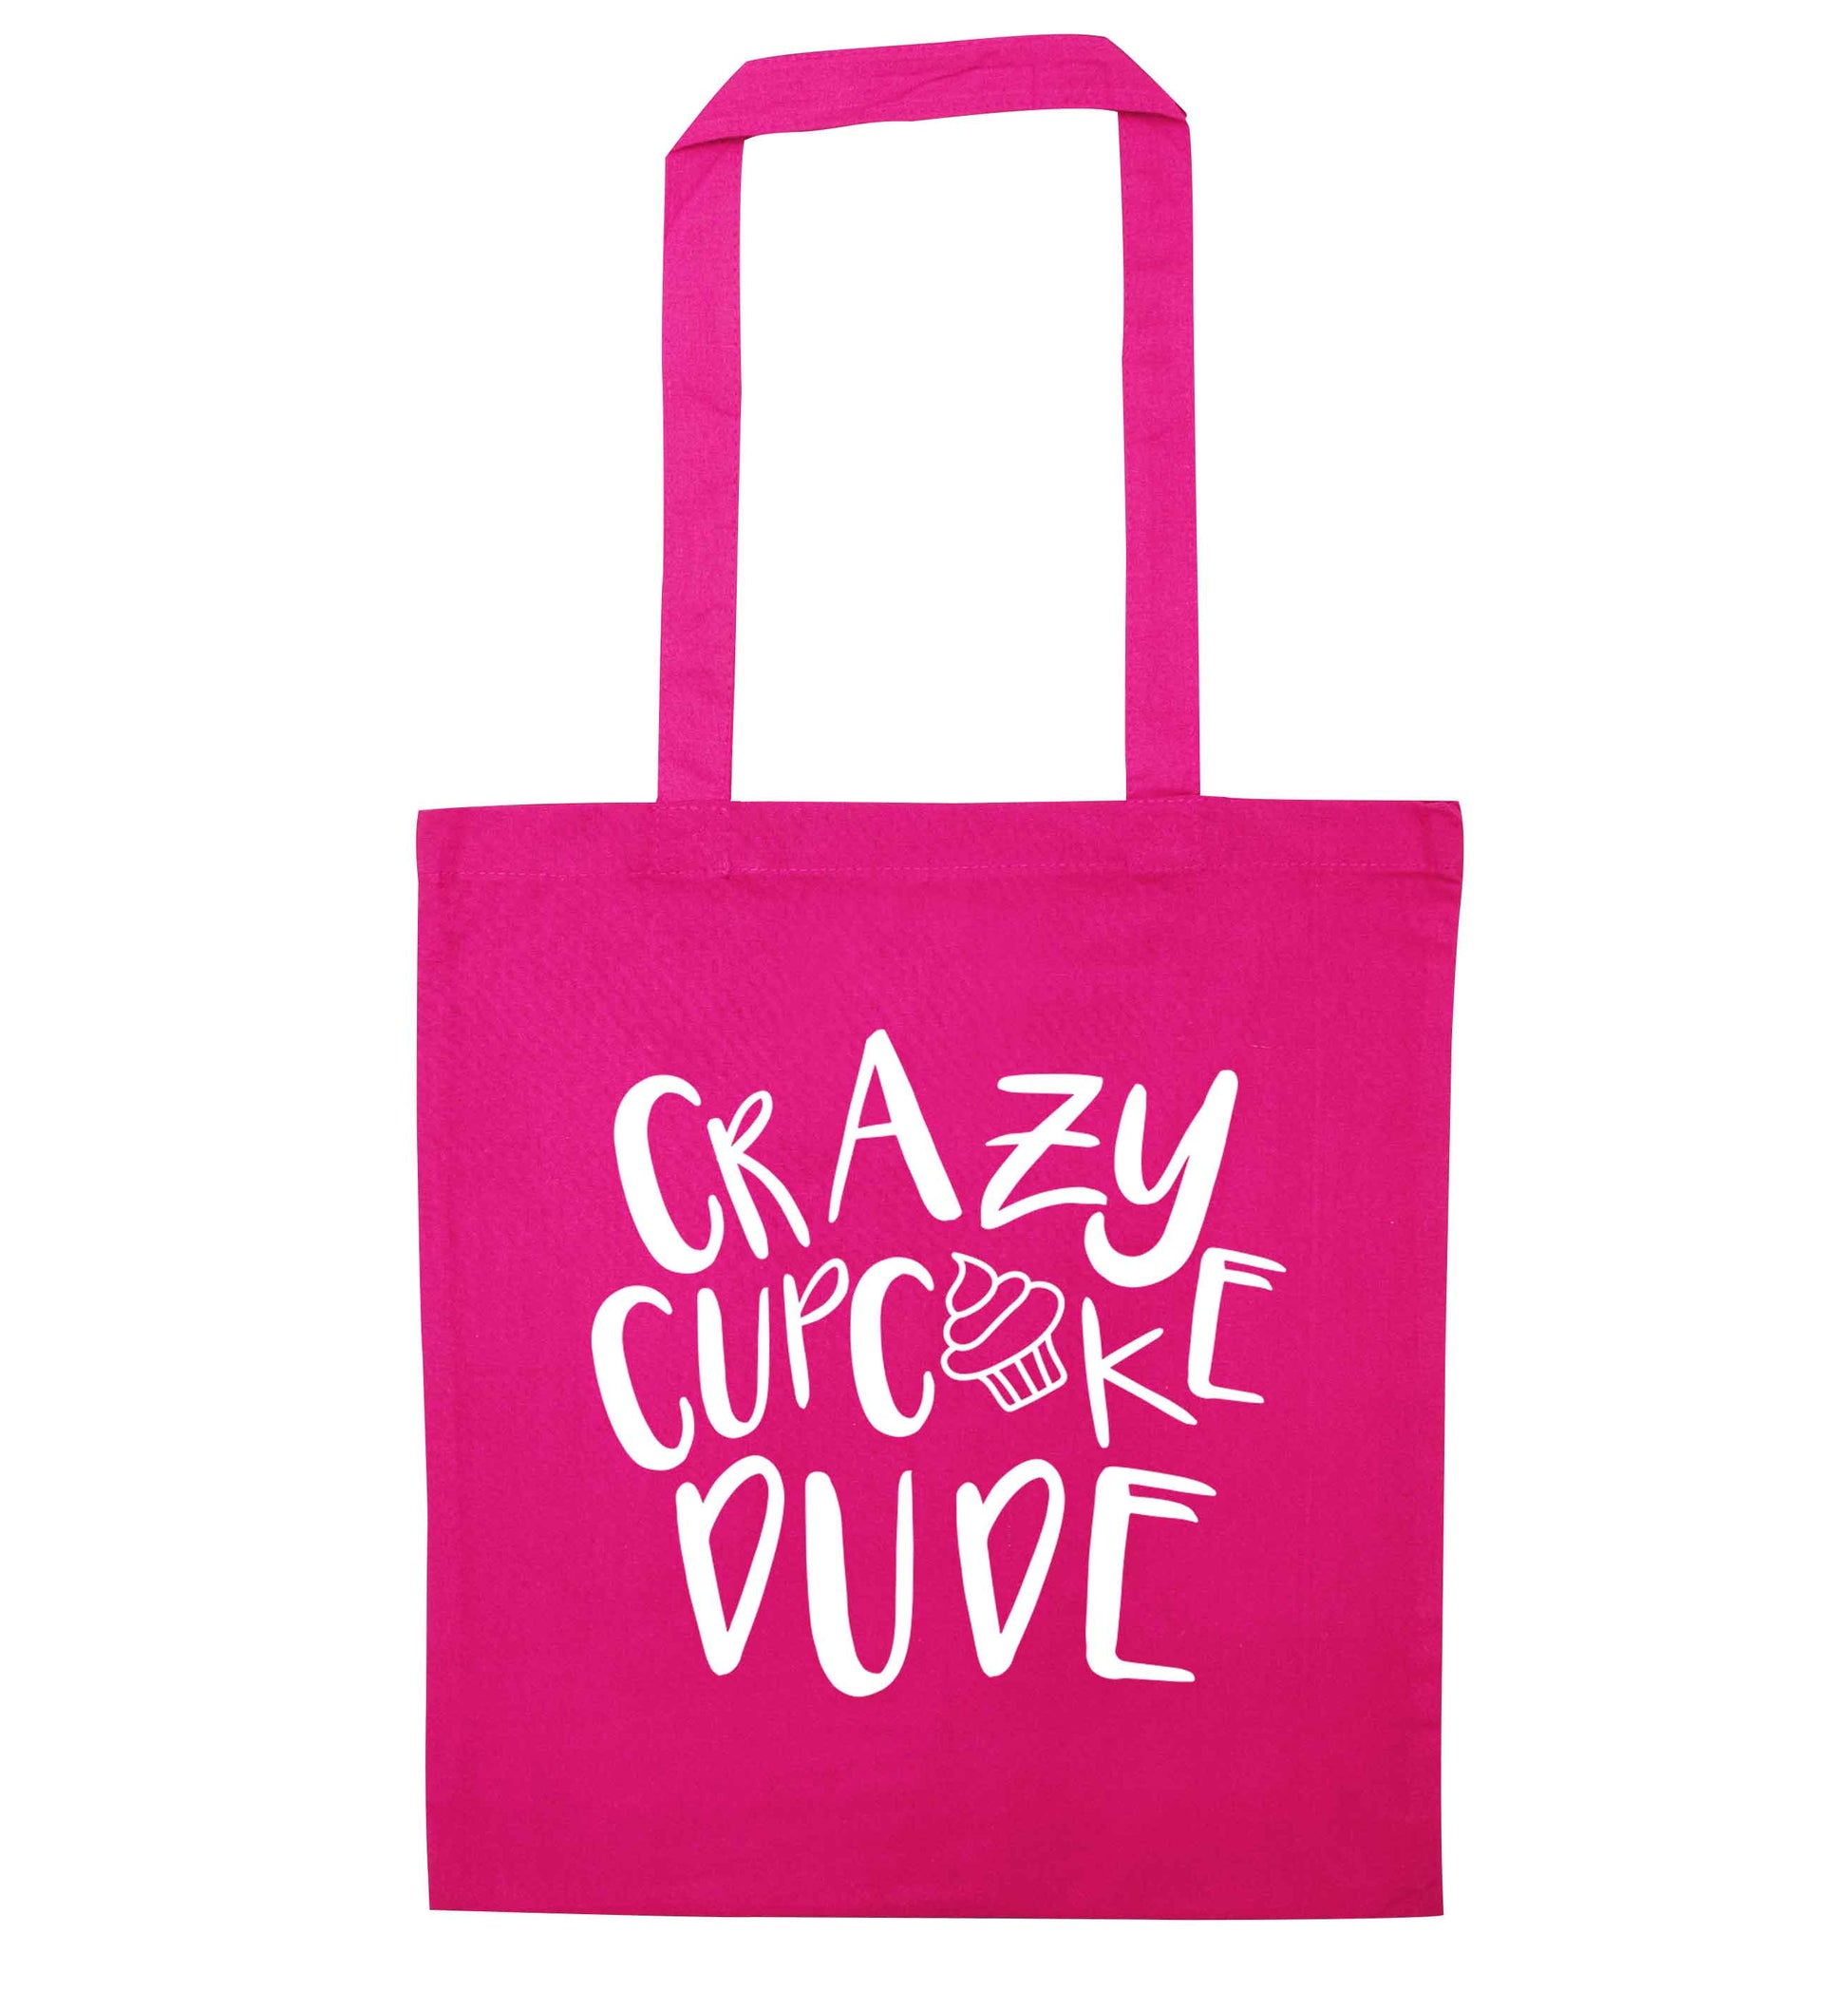 Crazy cupcake dude pink tote bag